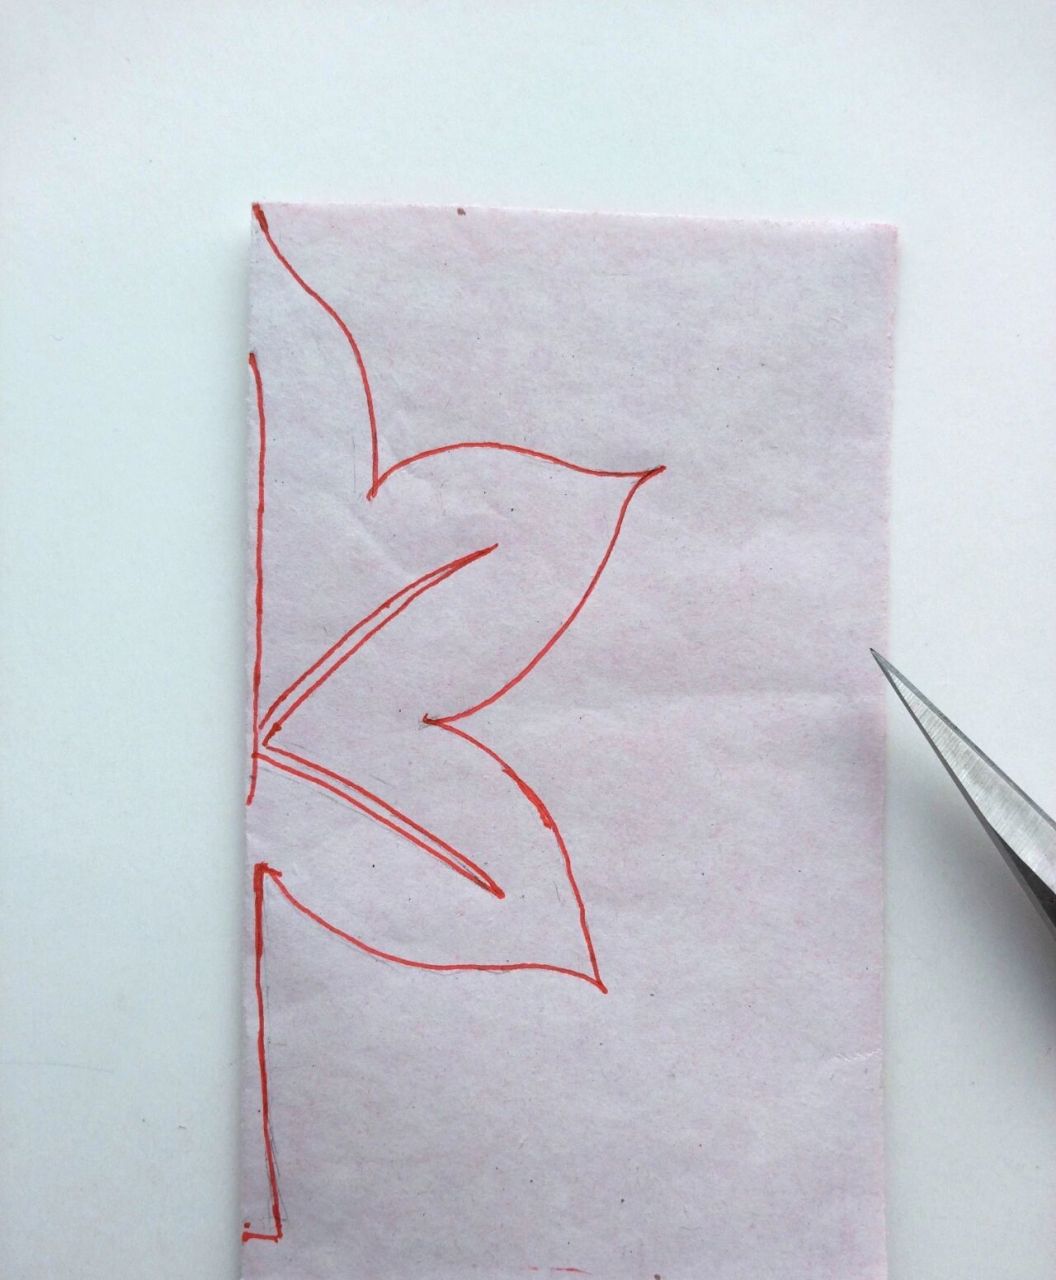 对折剪,儿童剪纸手工——枫叶93 今天来分享对折剪纸的枫叶93